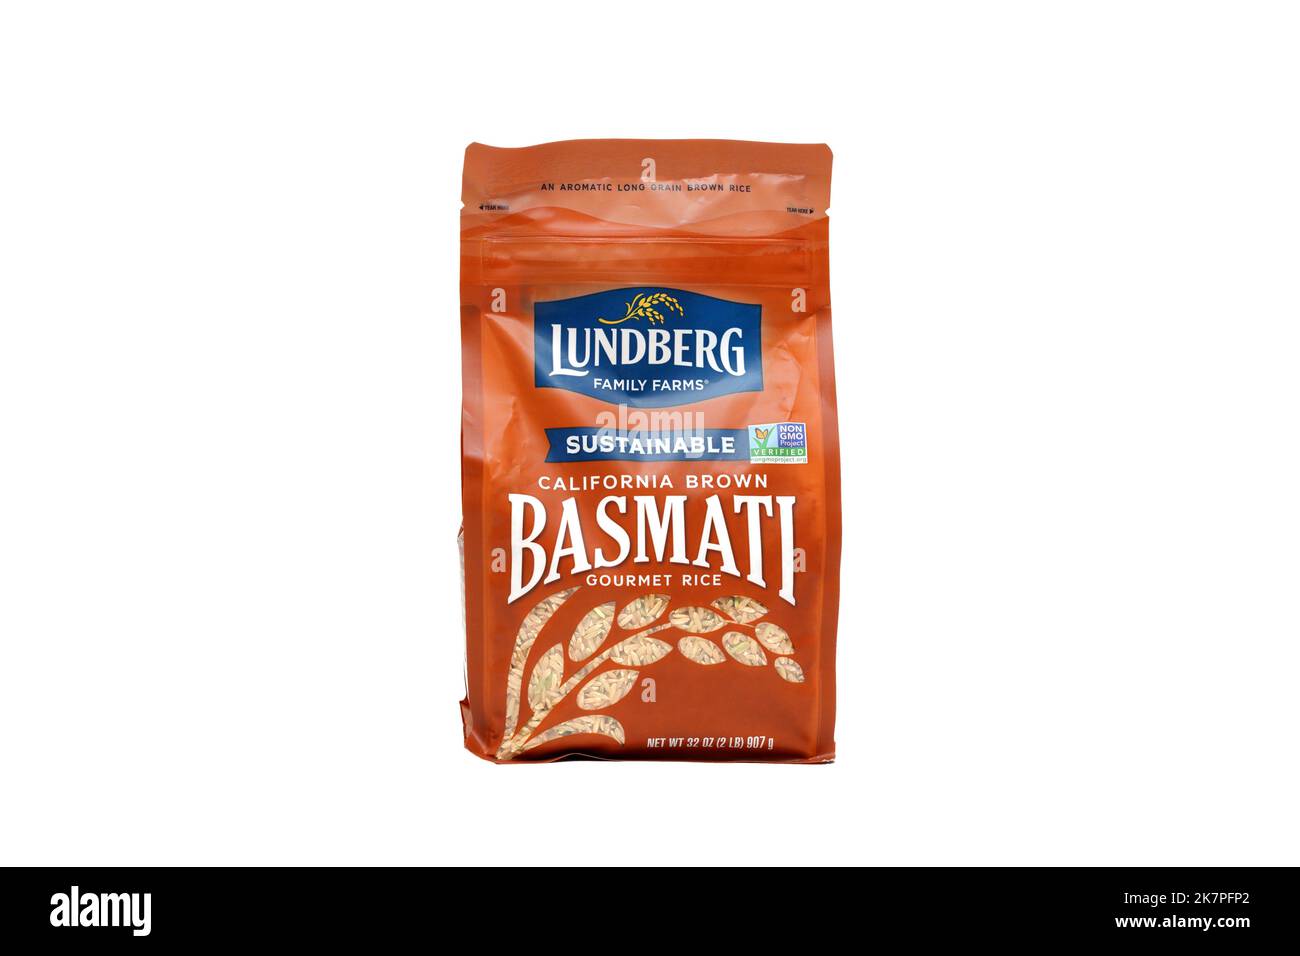 Una bolsa de arroz Basmati marrón de Lundberg Family Farms California aislada sobre un fondo blanco. imagen recortada para ilustración y uso editorial. Foto de stock